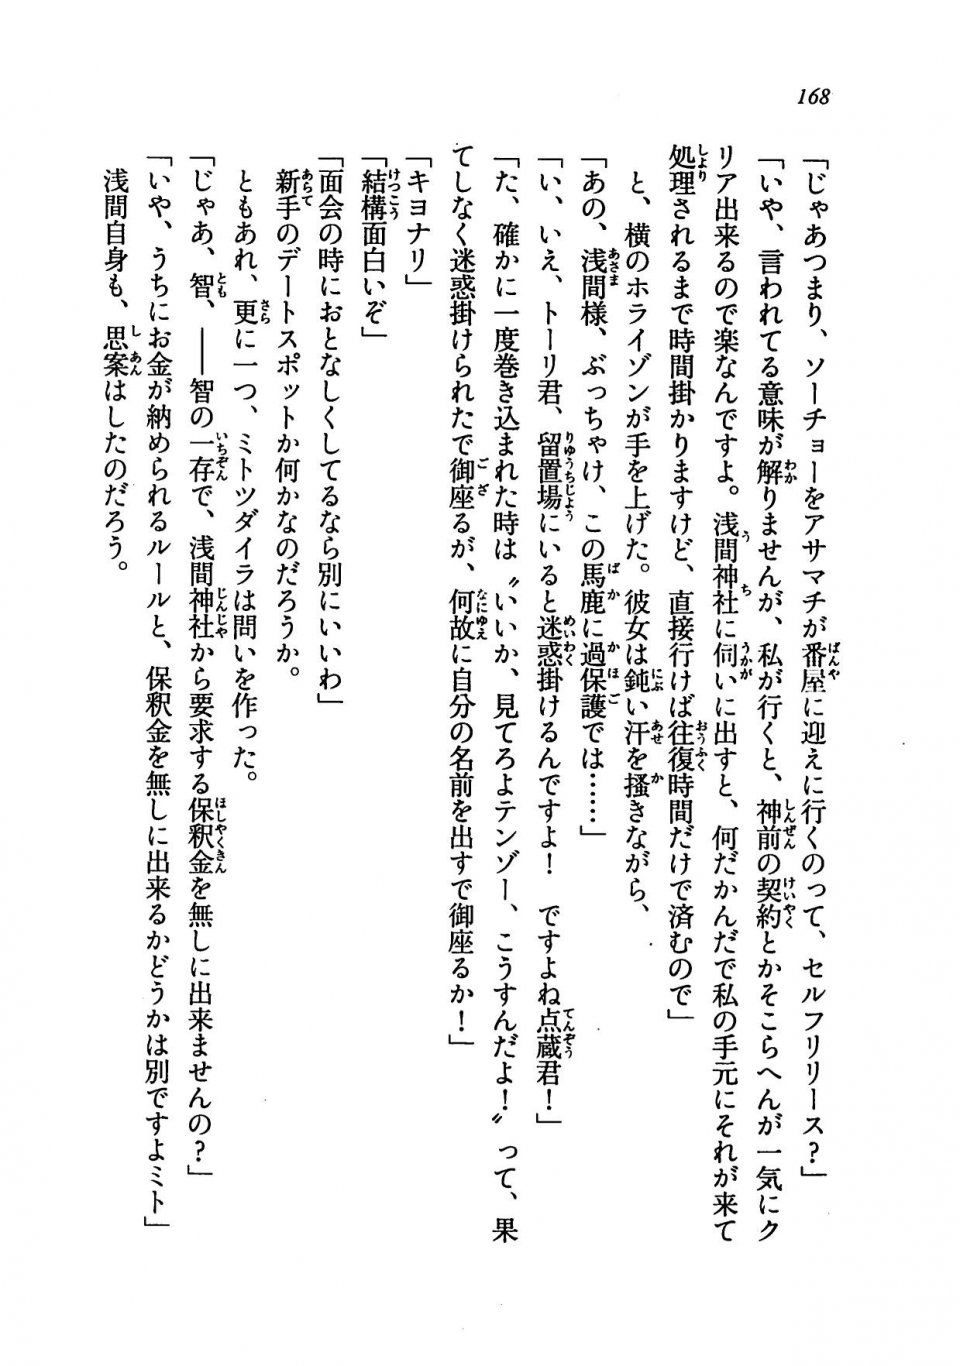 Kyoukai Senjou no Horizon LN Vol 19(8A) - Photo #168